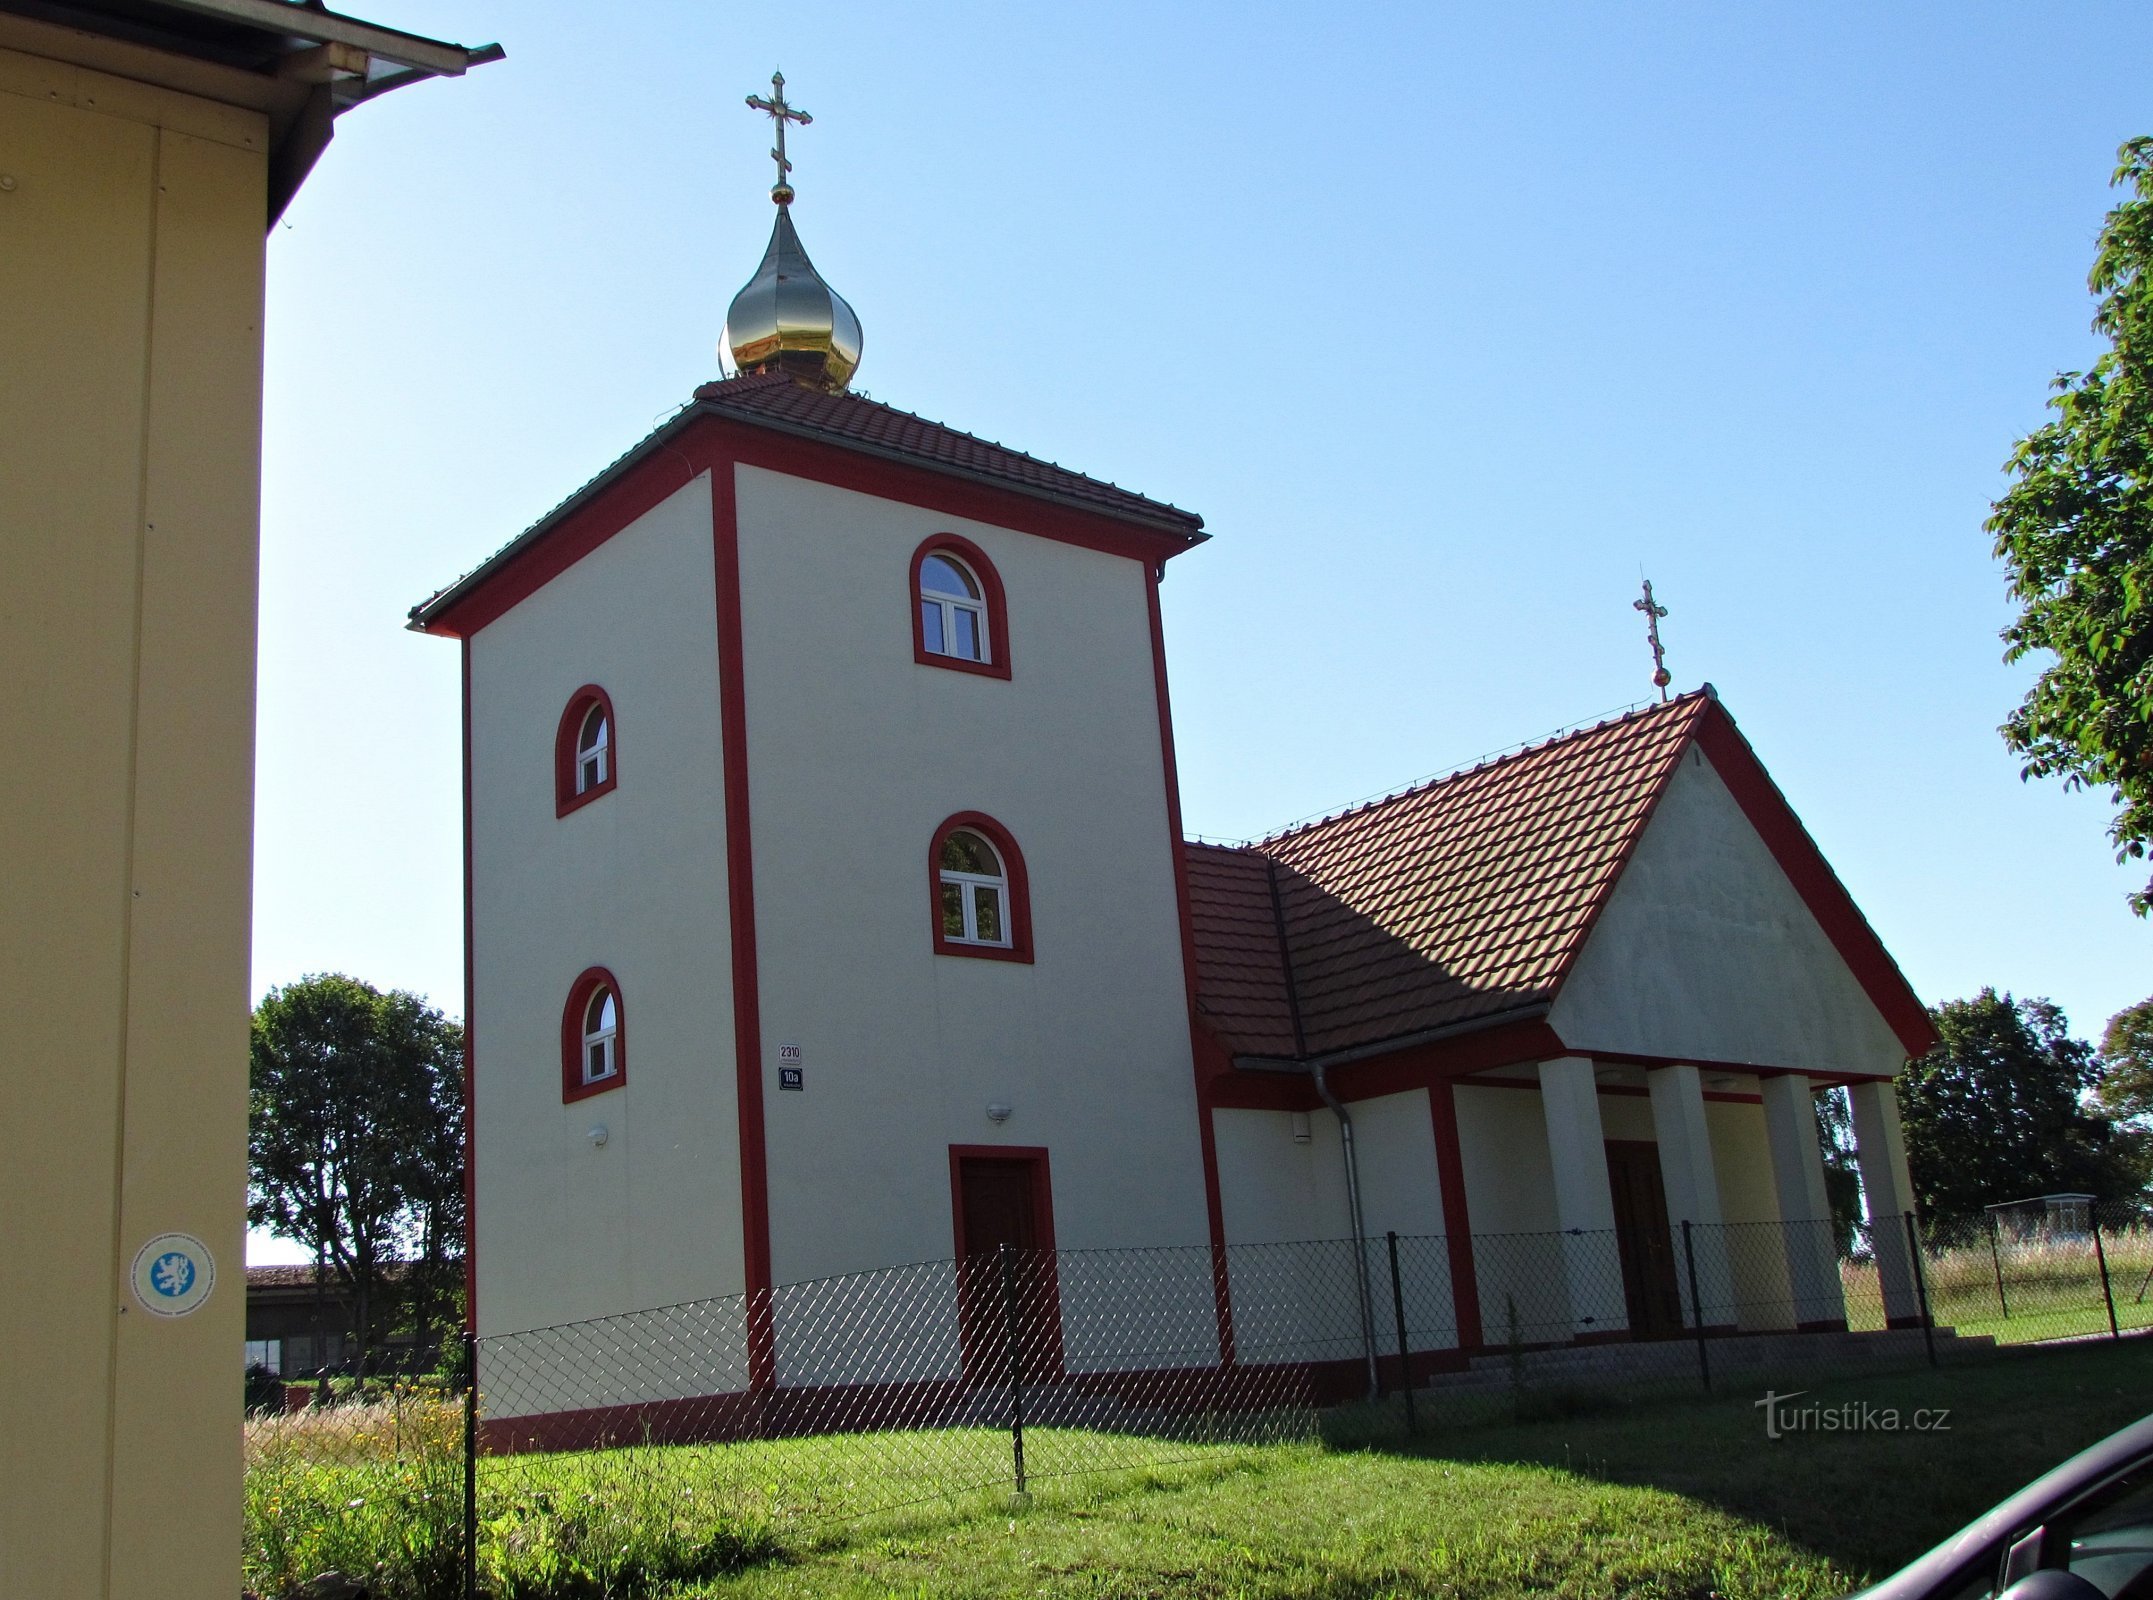 Capela Svitava de São Jorge